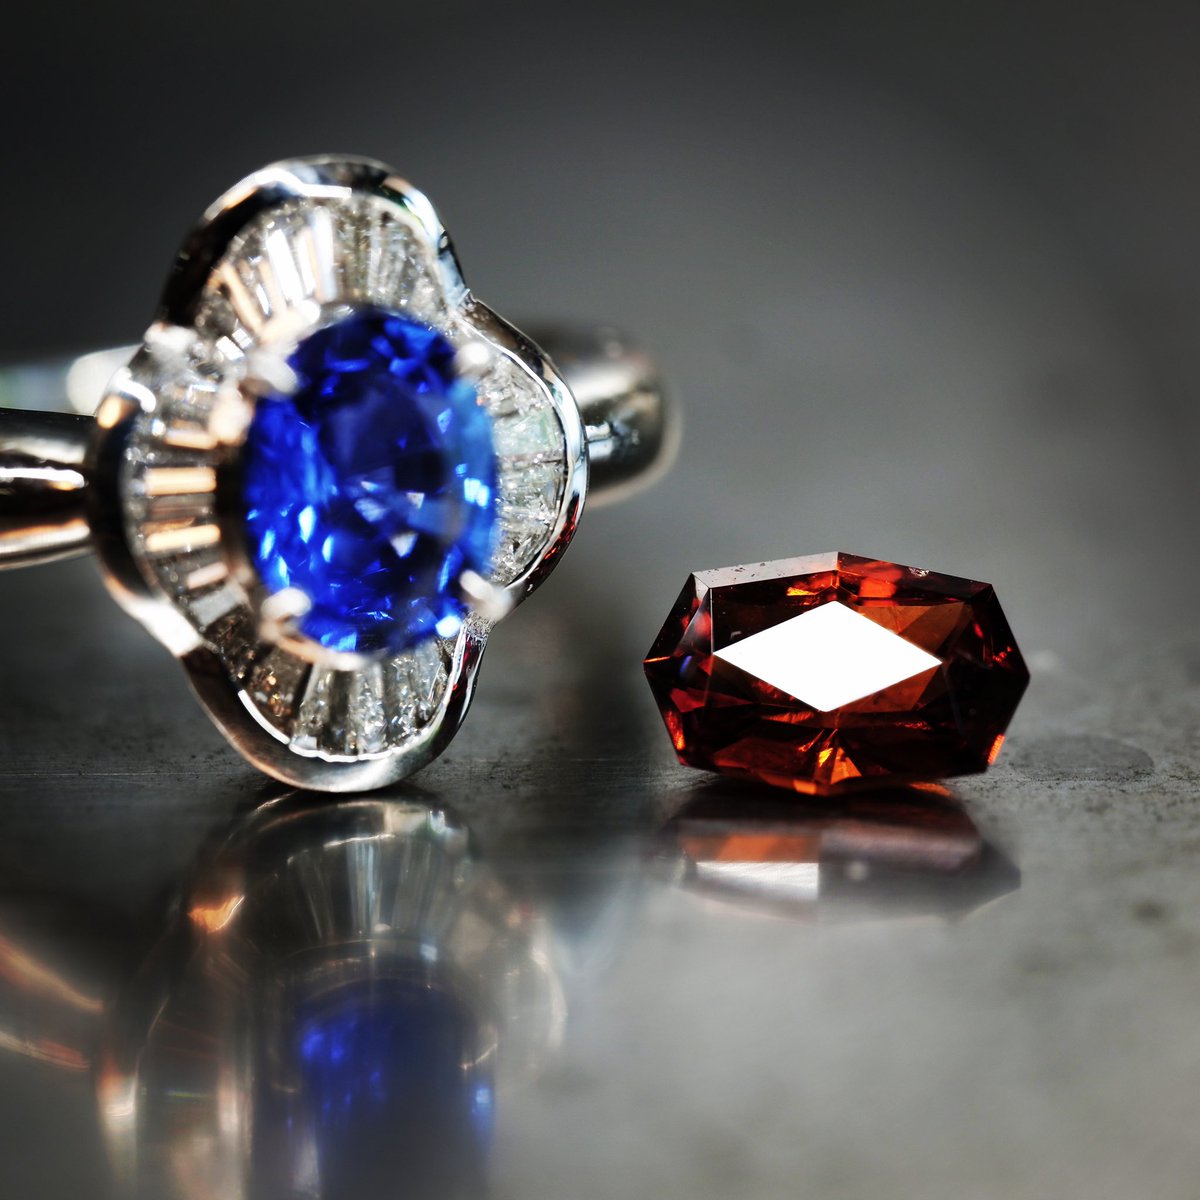 maiking hessonite garnet promise ring サファイアのリングを分解してプラチナのリング部分を溶かし再生地金としてリメイクしていきます。ヘソナイトガーネットのプロミスリングとサファイアはプチペンダントに。 #jewelry #handmadejewelry #bespokejewelry #hessonitegarnet #yujiishii